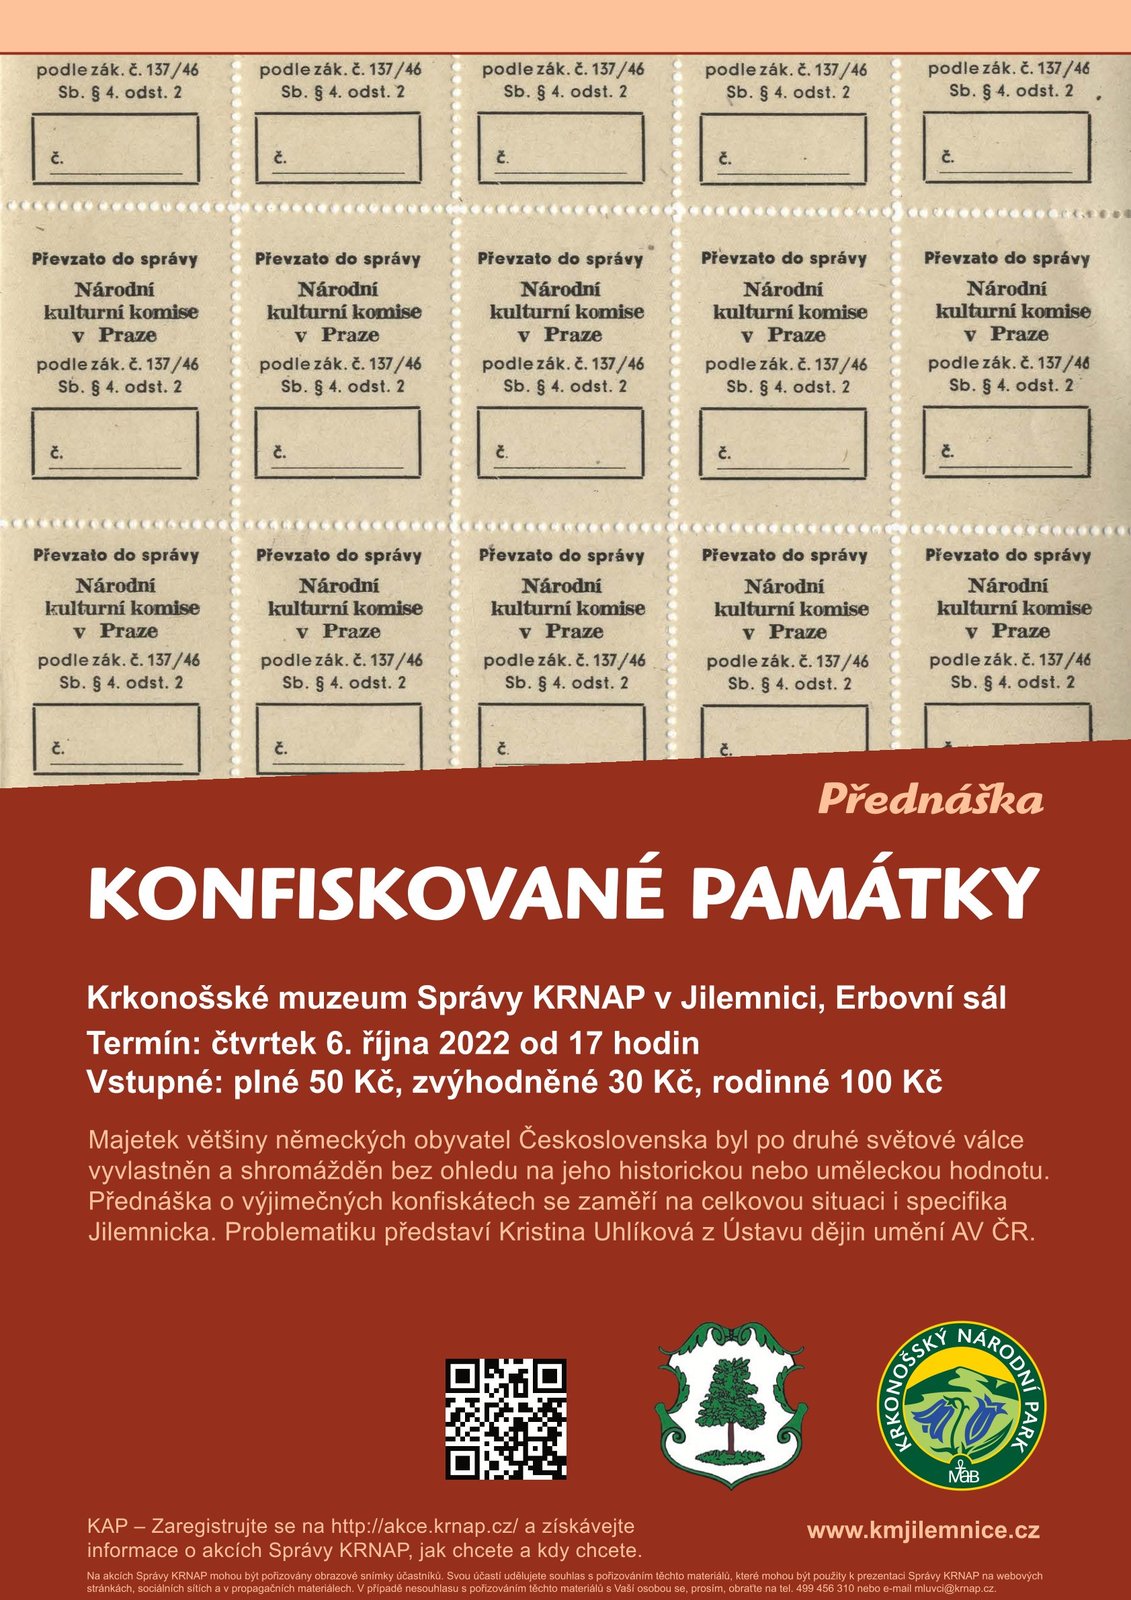 Pozvánka do Krkonošského muzea v Jilemnici na přednášku "Konfiskované památky"